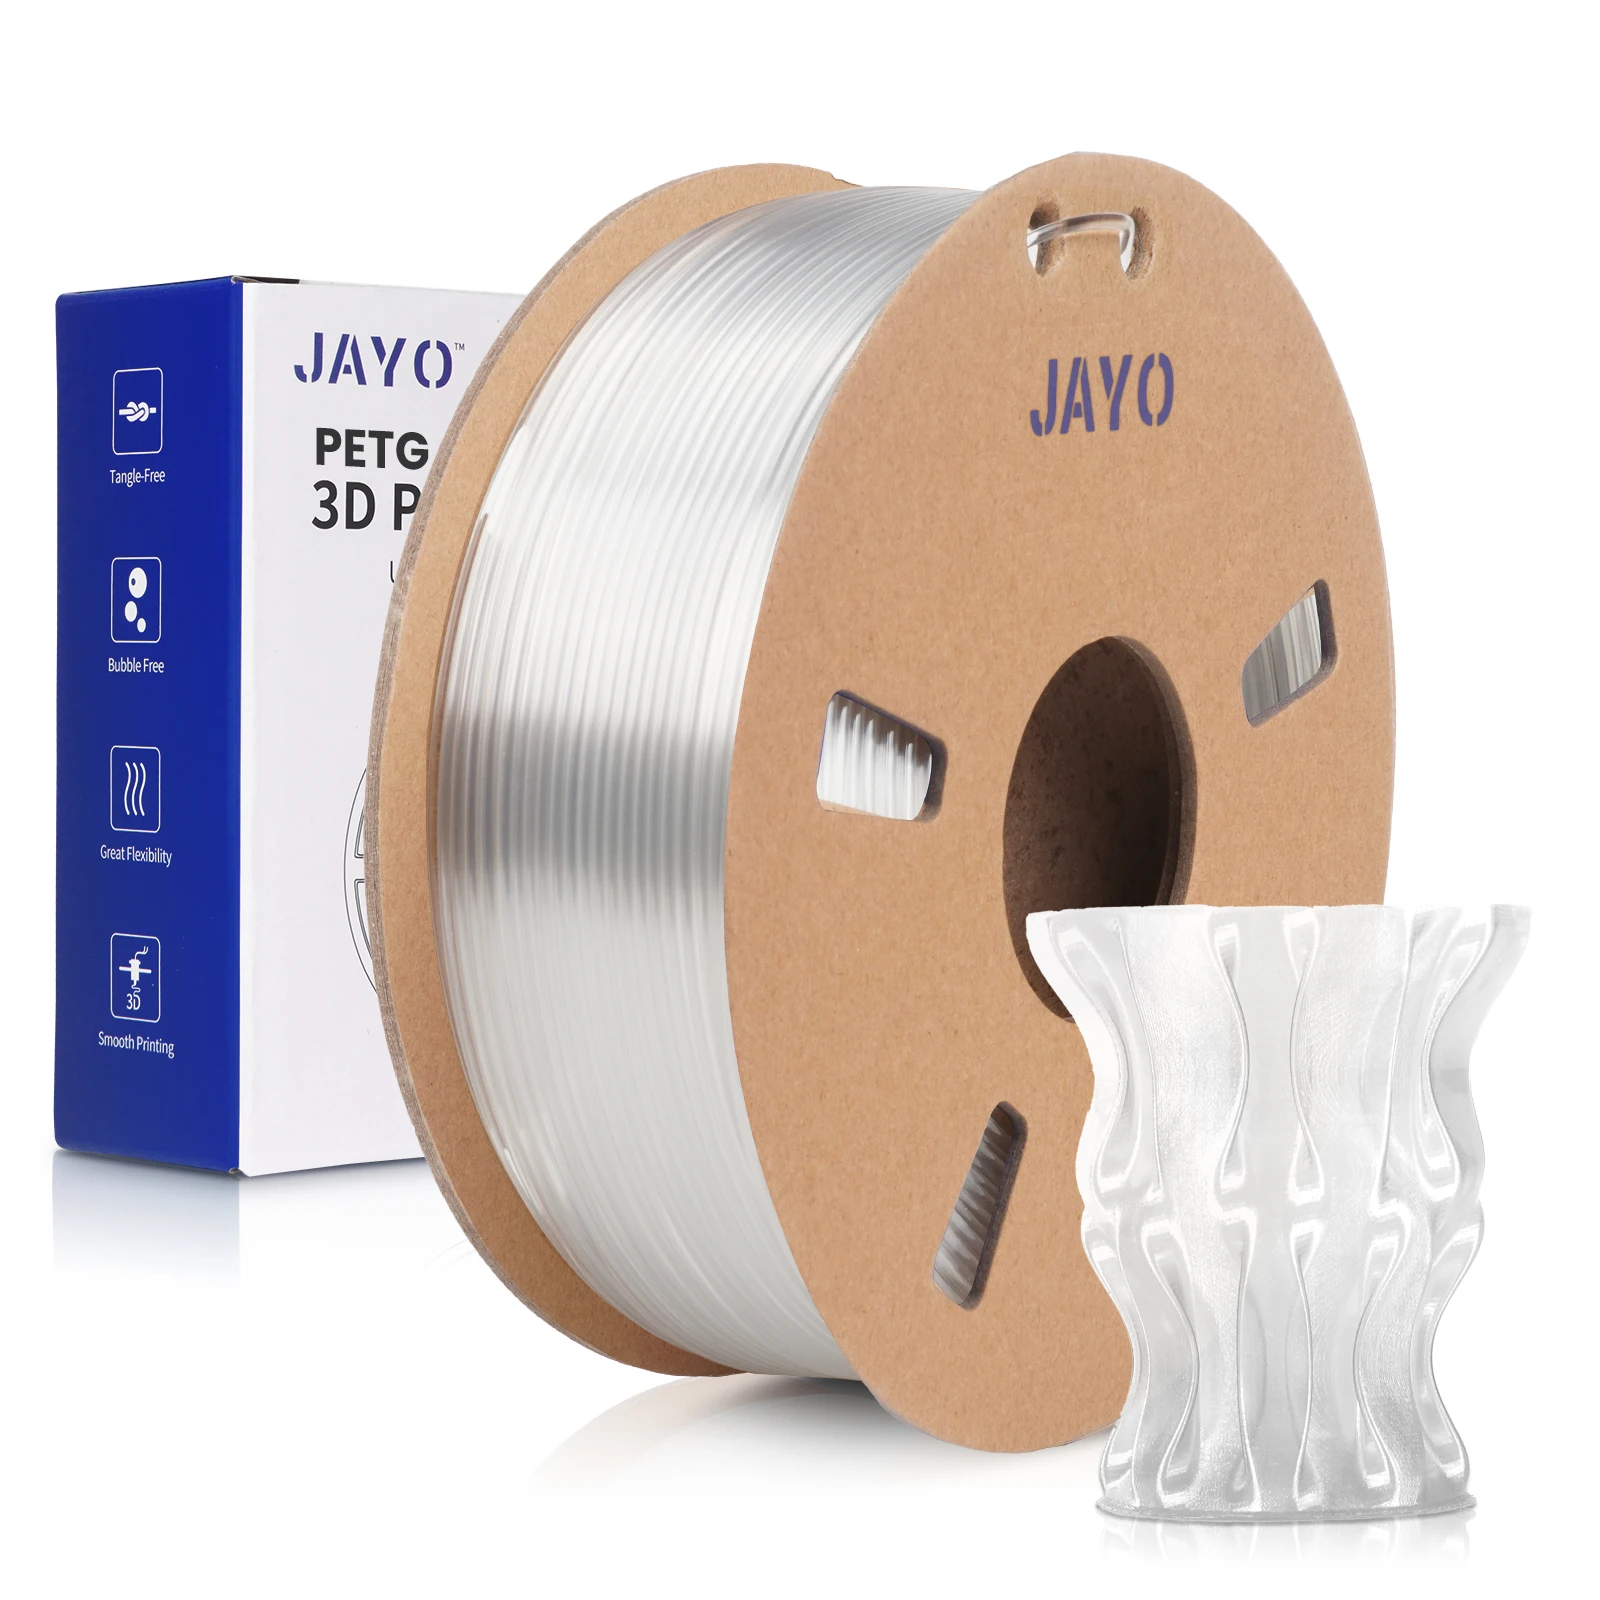 

Нить JAYO PETG/PLA/PLAPLUS/шелк/АБС/пла Металл 1,75 мм нить 0,65 кг/рулон высокопрочный FDM 3D-принтер материал сделай сам подарок